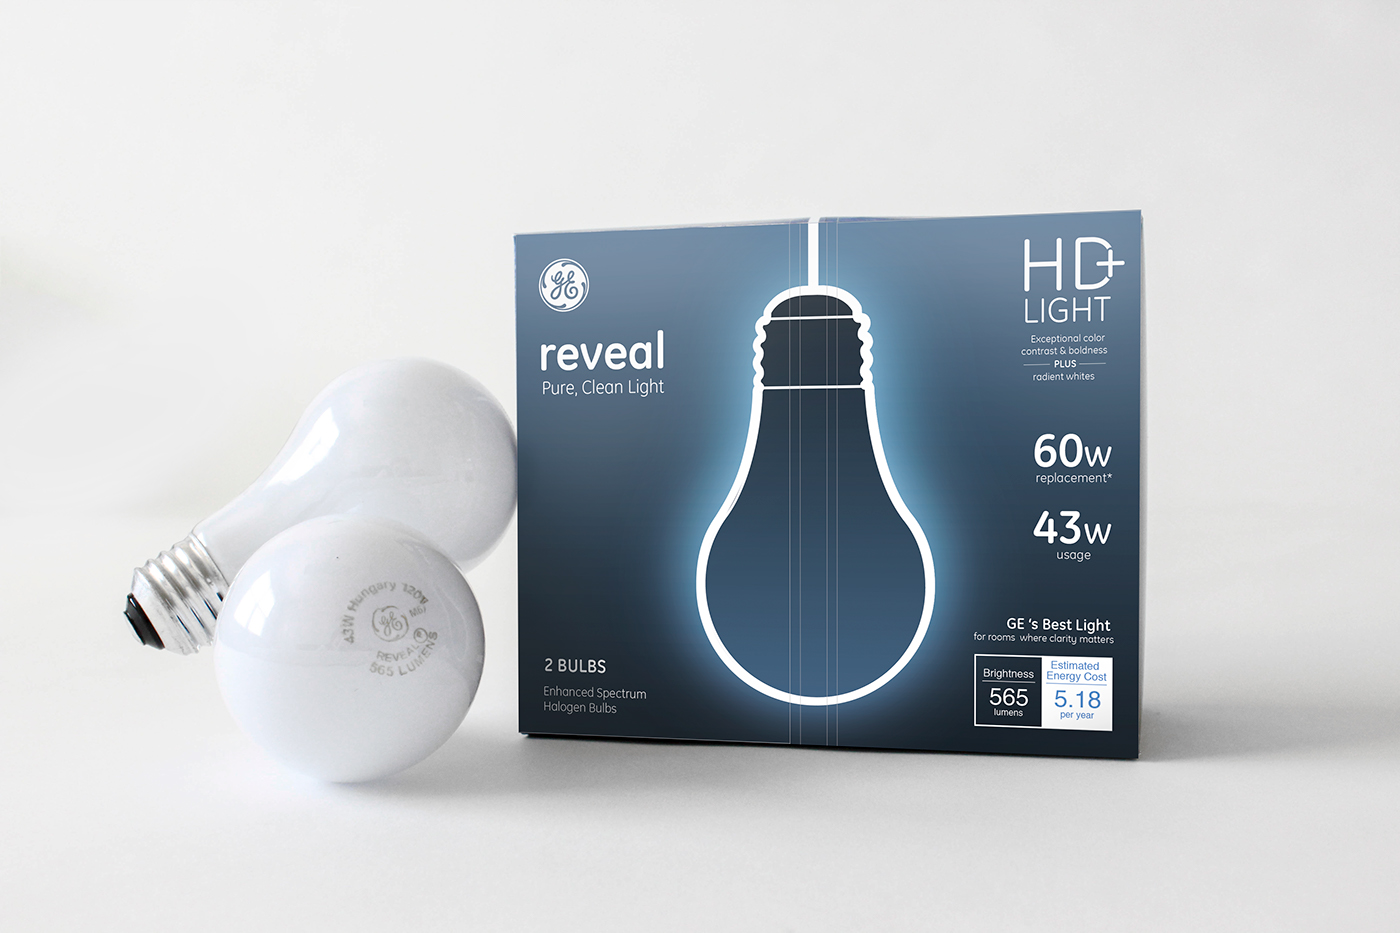 Lightbulb package